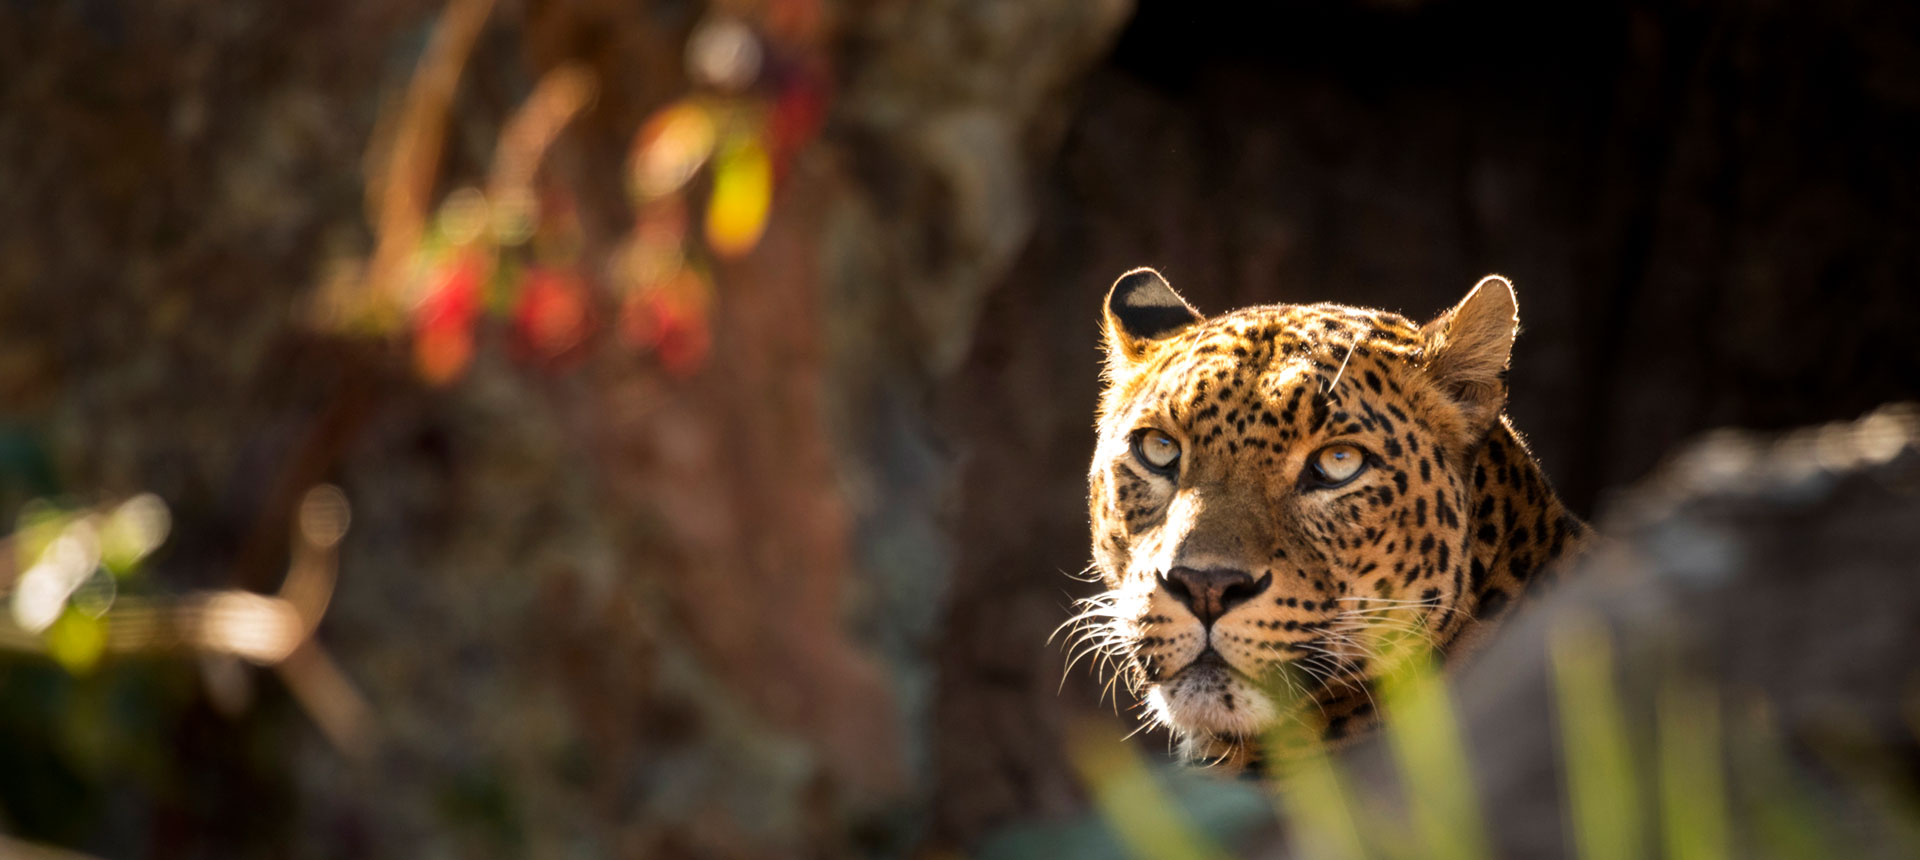 jawai leopard safari wikipedia